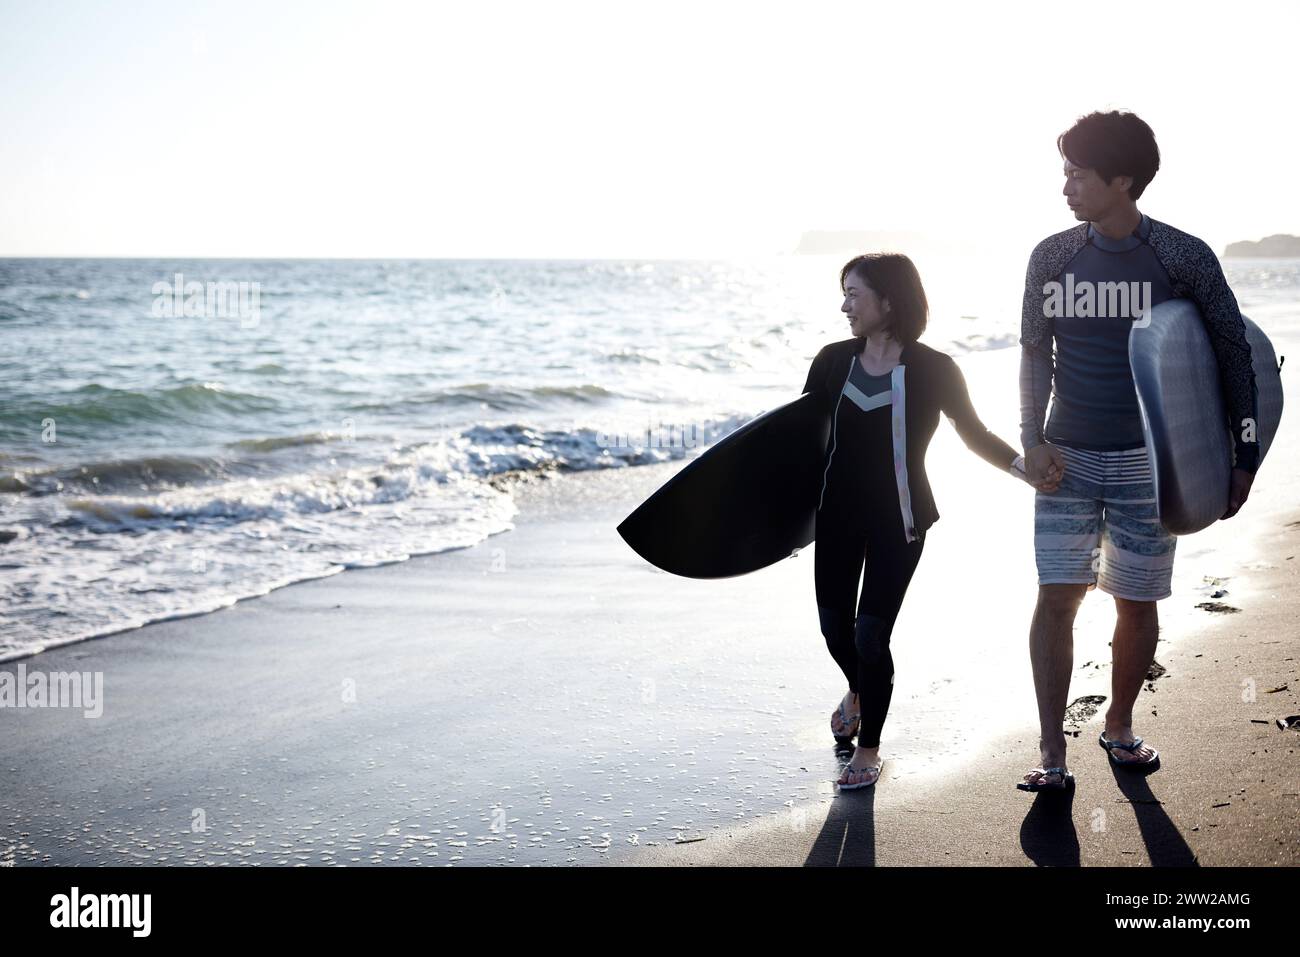 Un homme et une femme marchant sur la plage tenant des planches de surf Banque D'Images